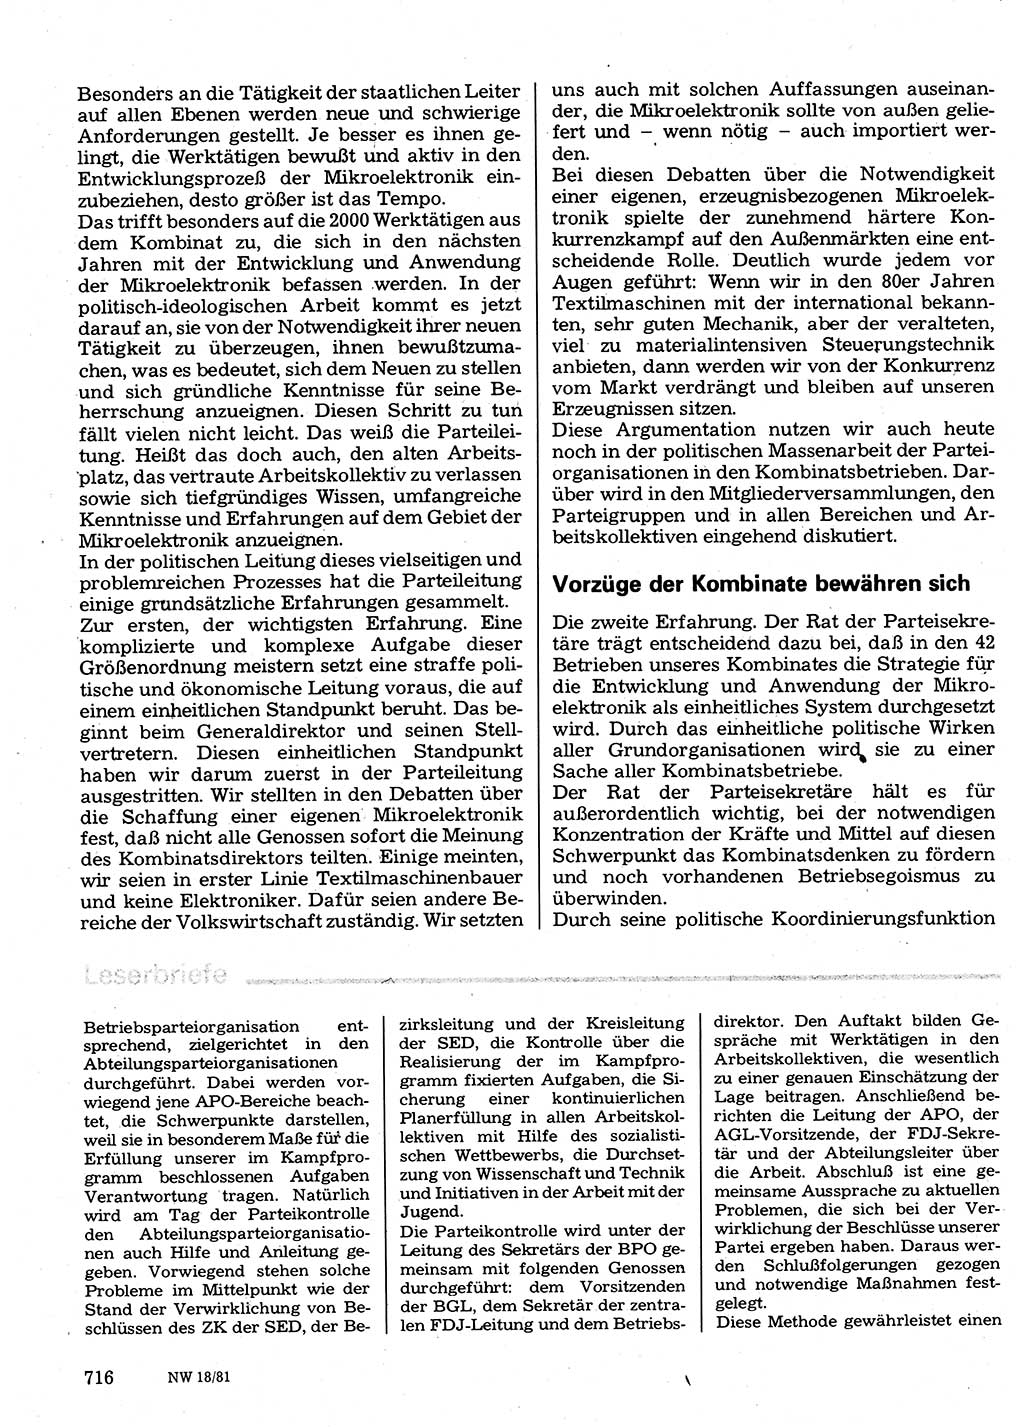 Neuer Weg (NW), Organ des Zentralkomitees (ZK) der SED (Sozialistische Einheitspartei Deutschlands) für Fragen des Parteilebens, 36. Jahrgang [Deutsche Demokratische Republik (DDR)] 1981, Seite 716 (NW ZK SED DDR 1981, S. 716)